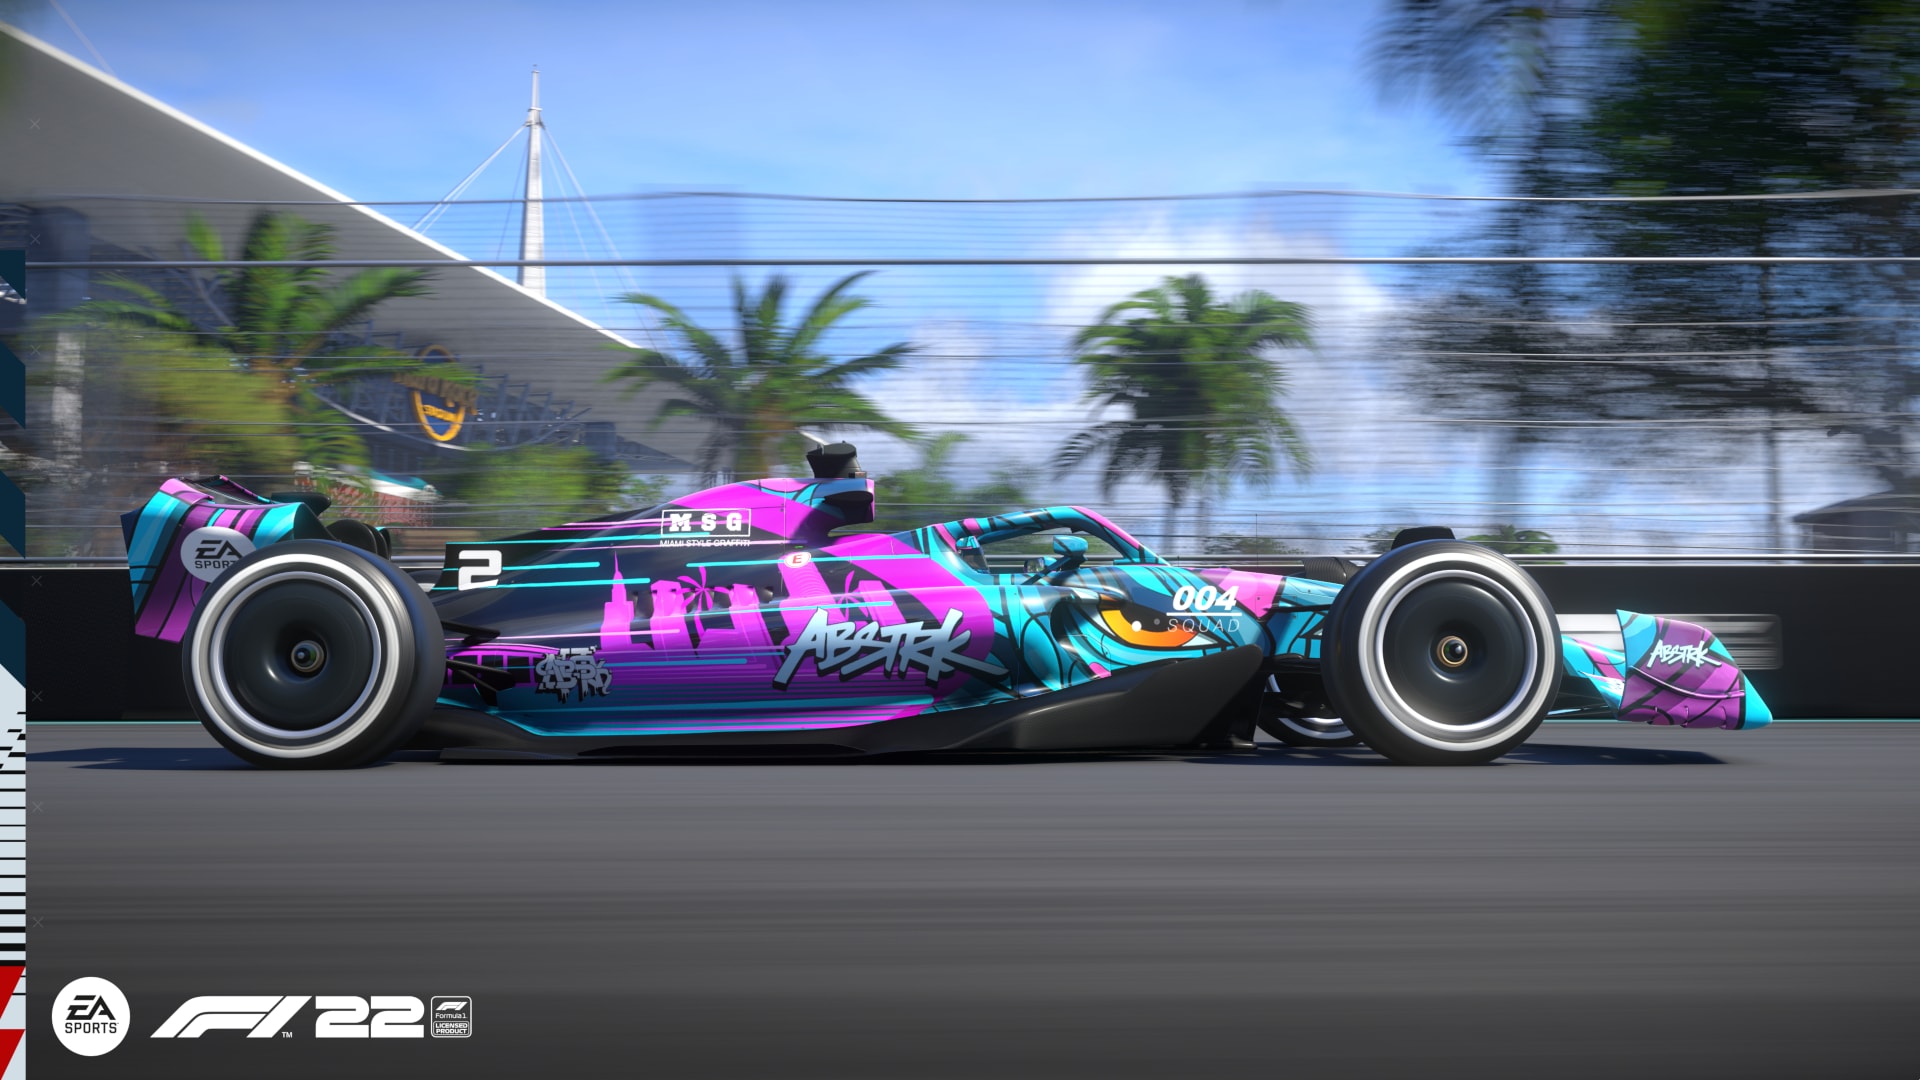 F1 22 - Miami Sizzle Trailer